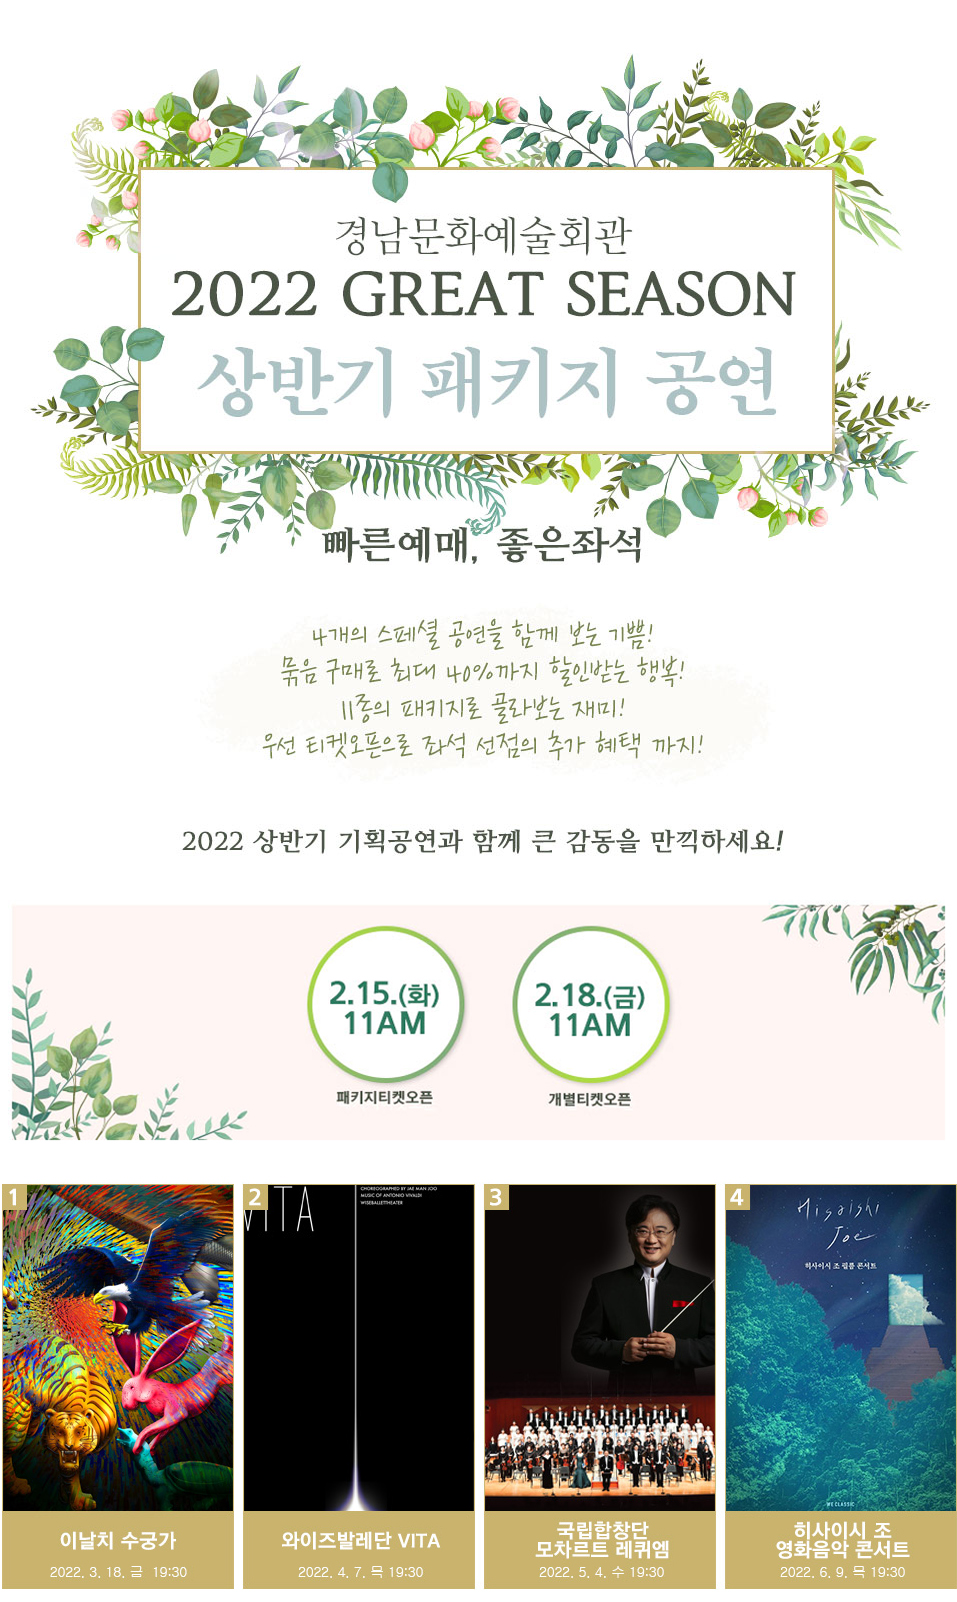 (경남문화예술회관보도자료,220211)2022GreatSeason상반기패키지공연이미지.jpg